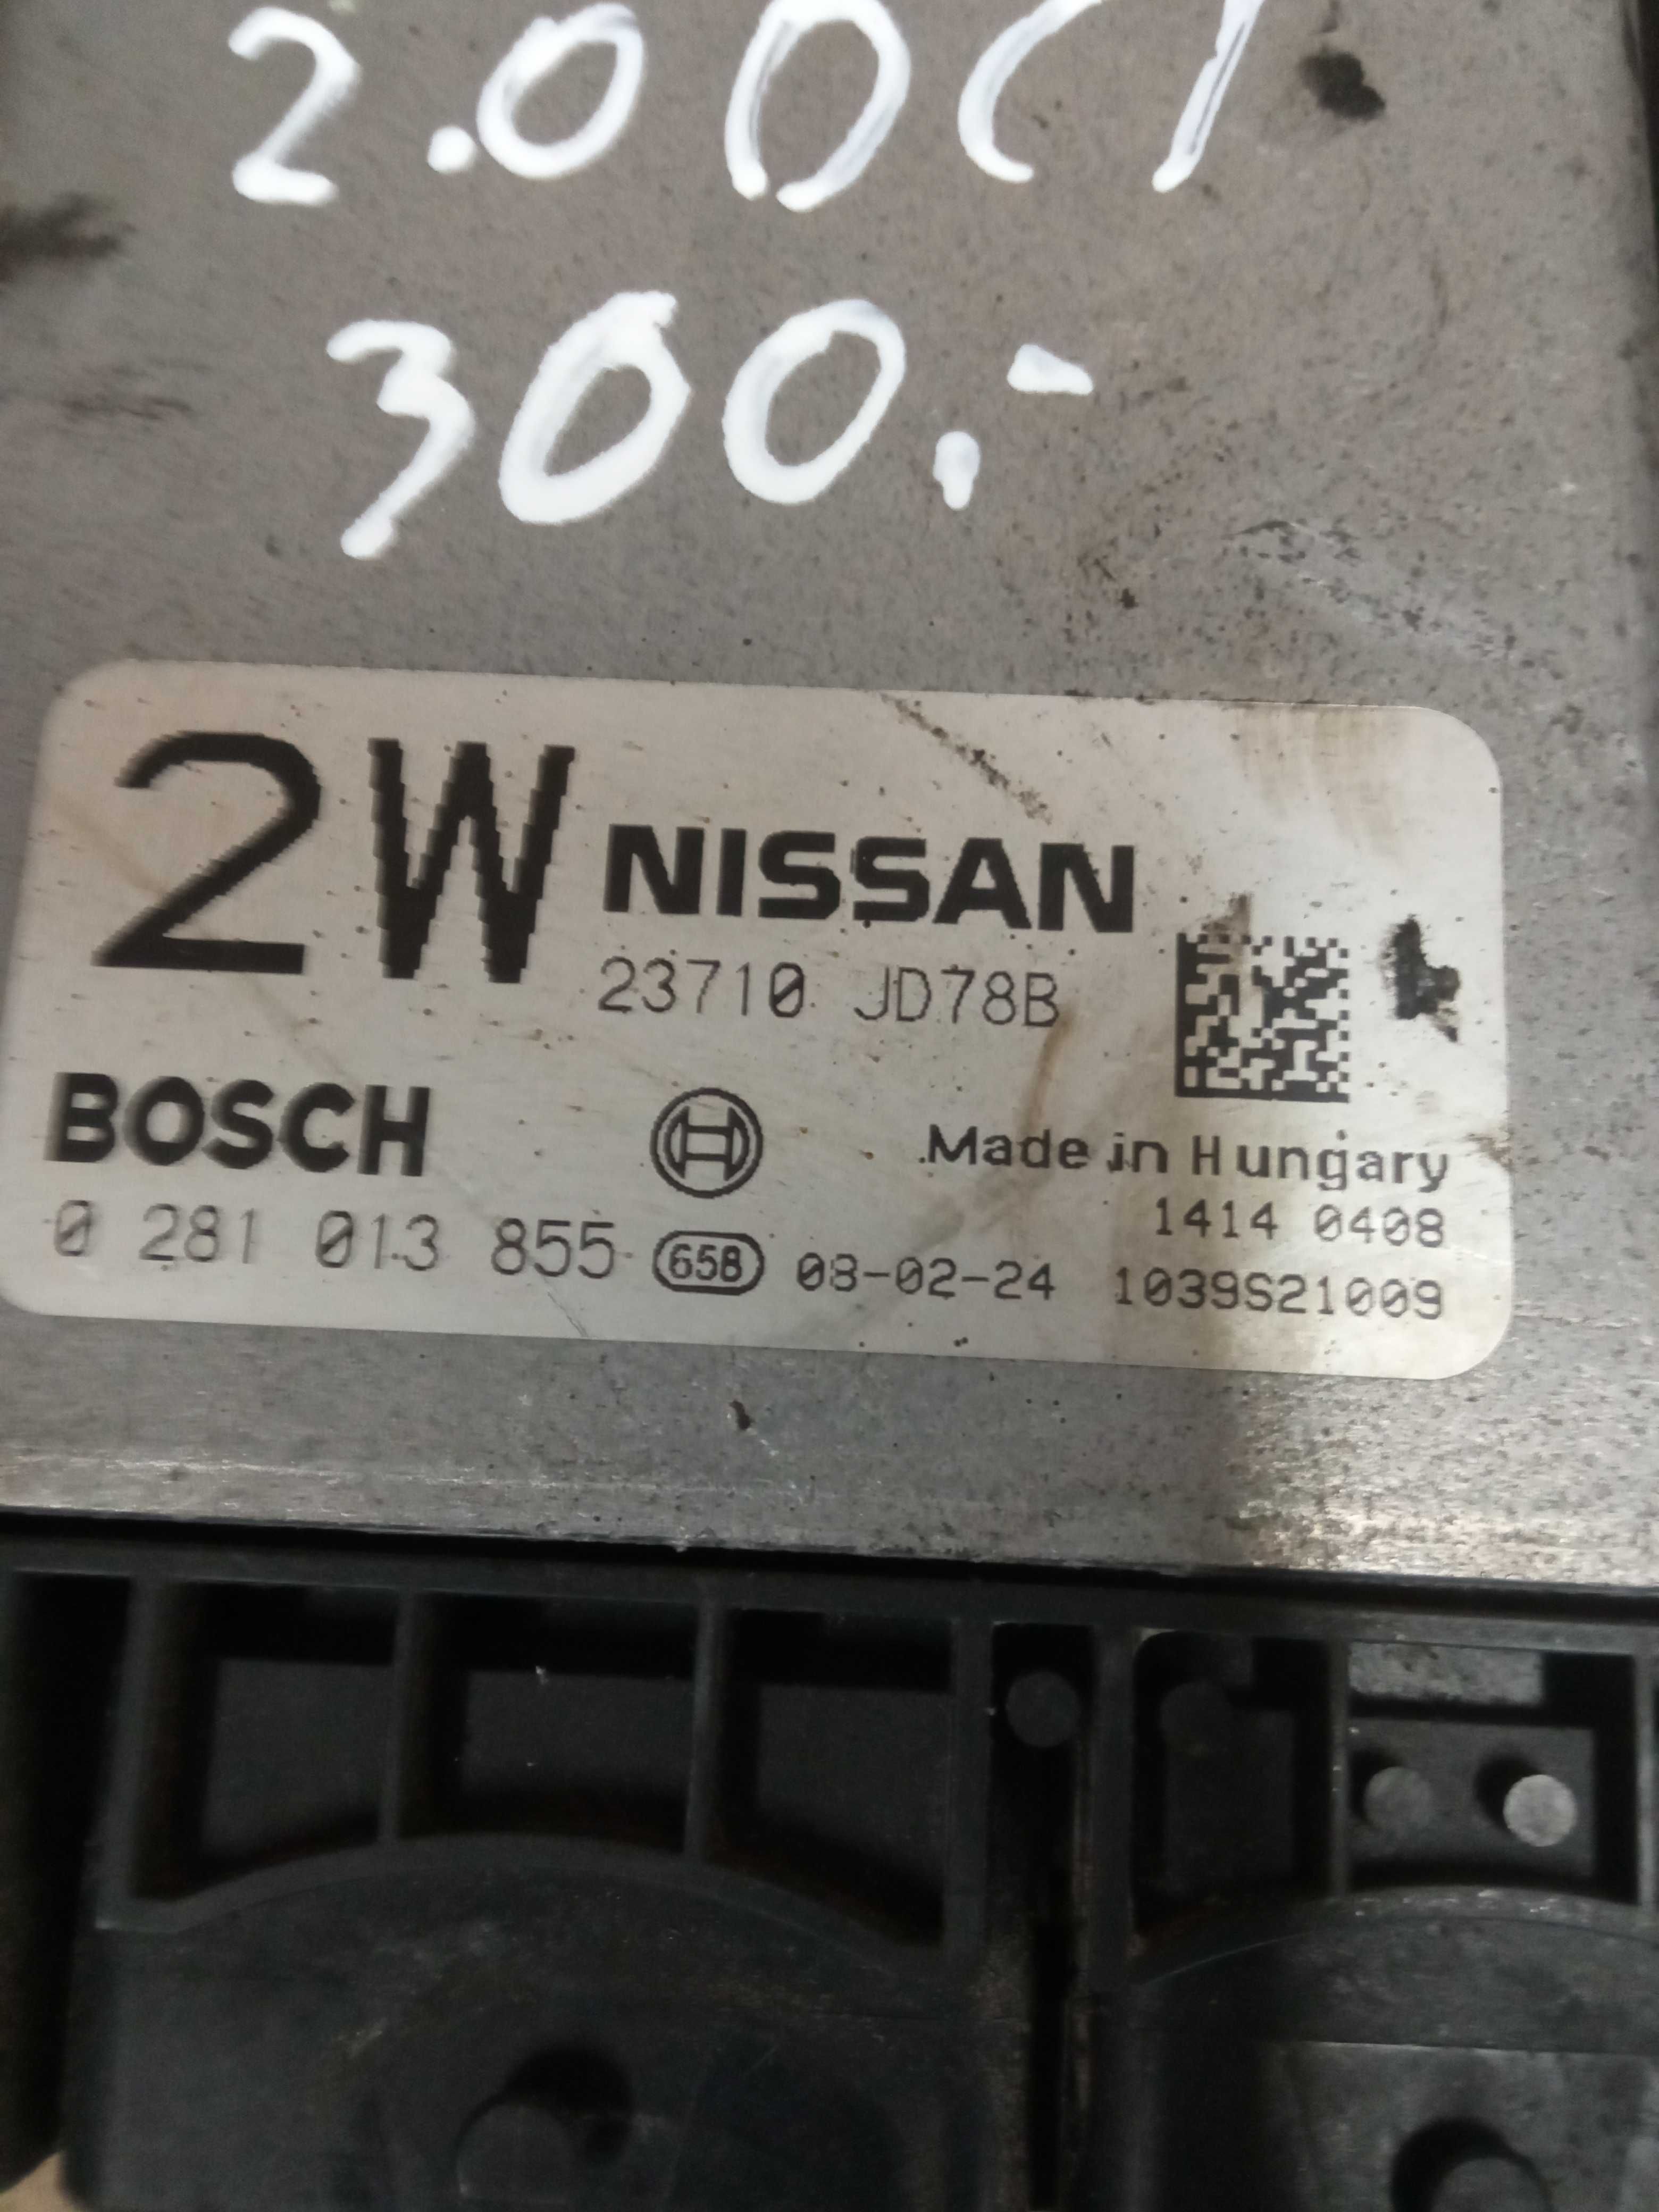 Sterownik silnika Nissan Qashqai J10 2.0 DCI 0281/013/855 Siedlce